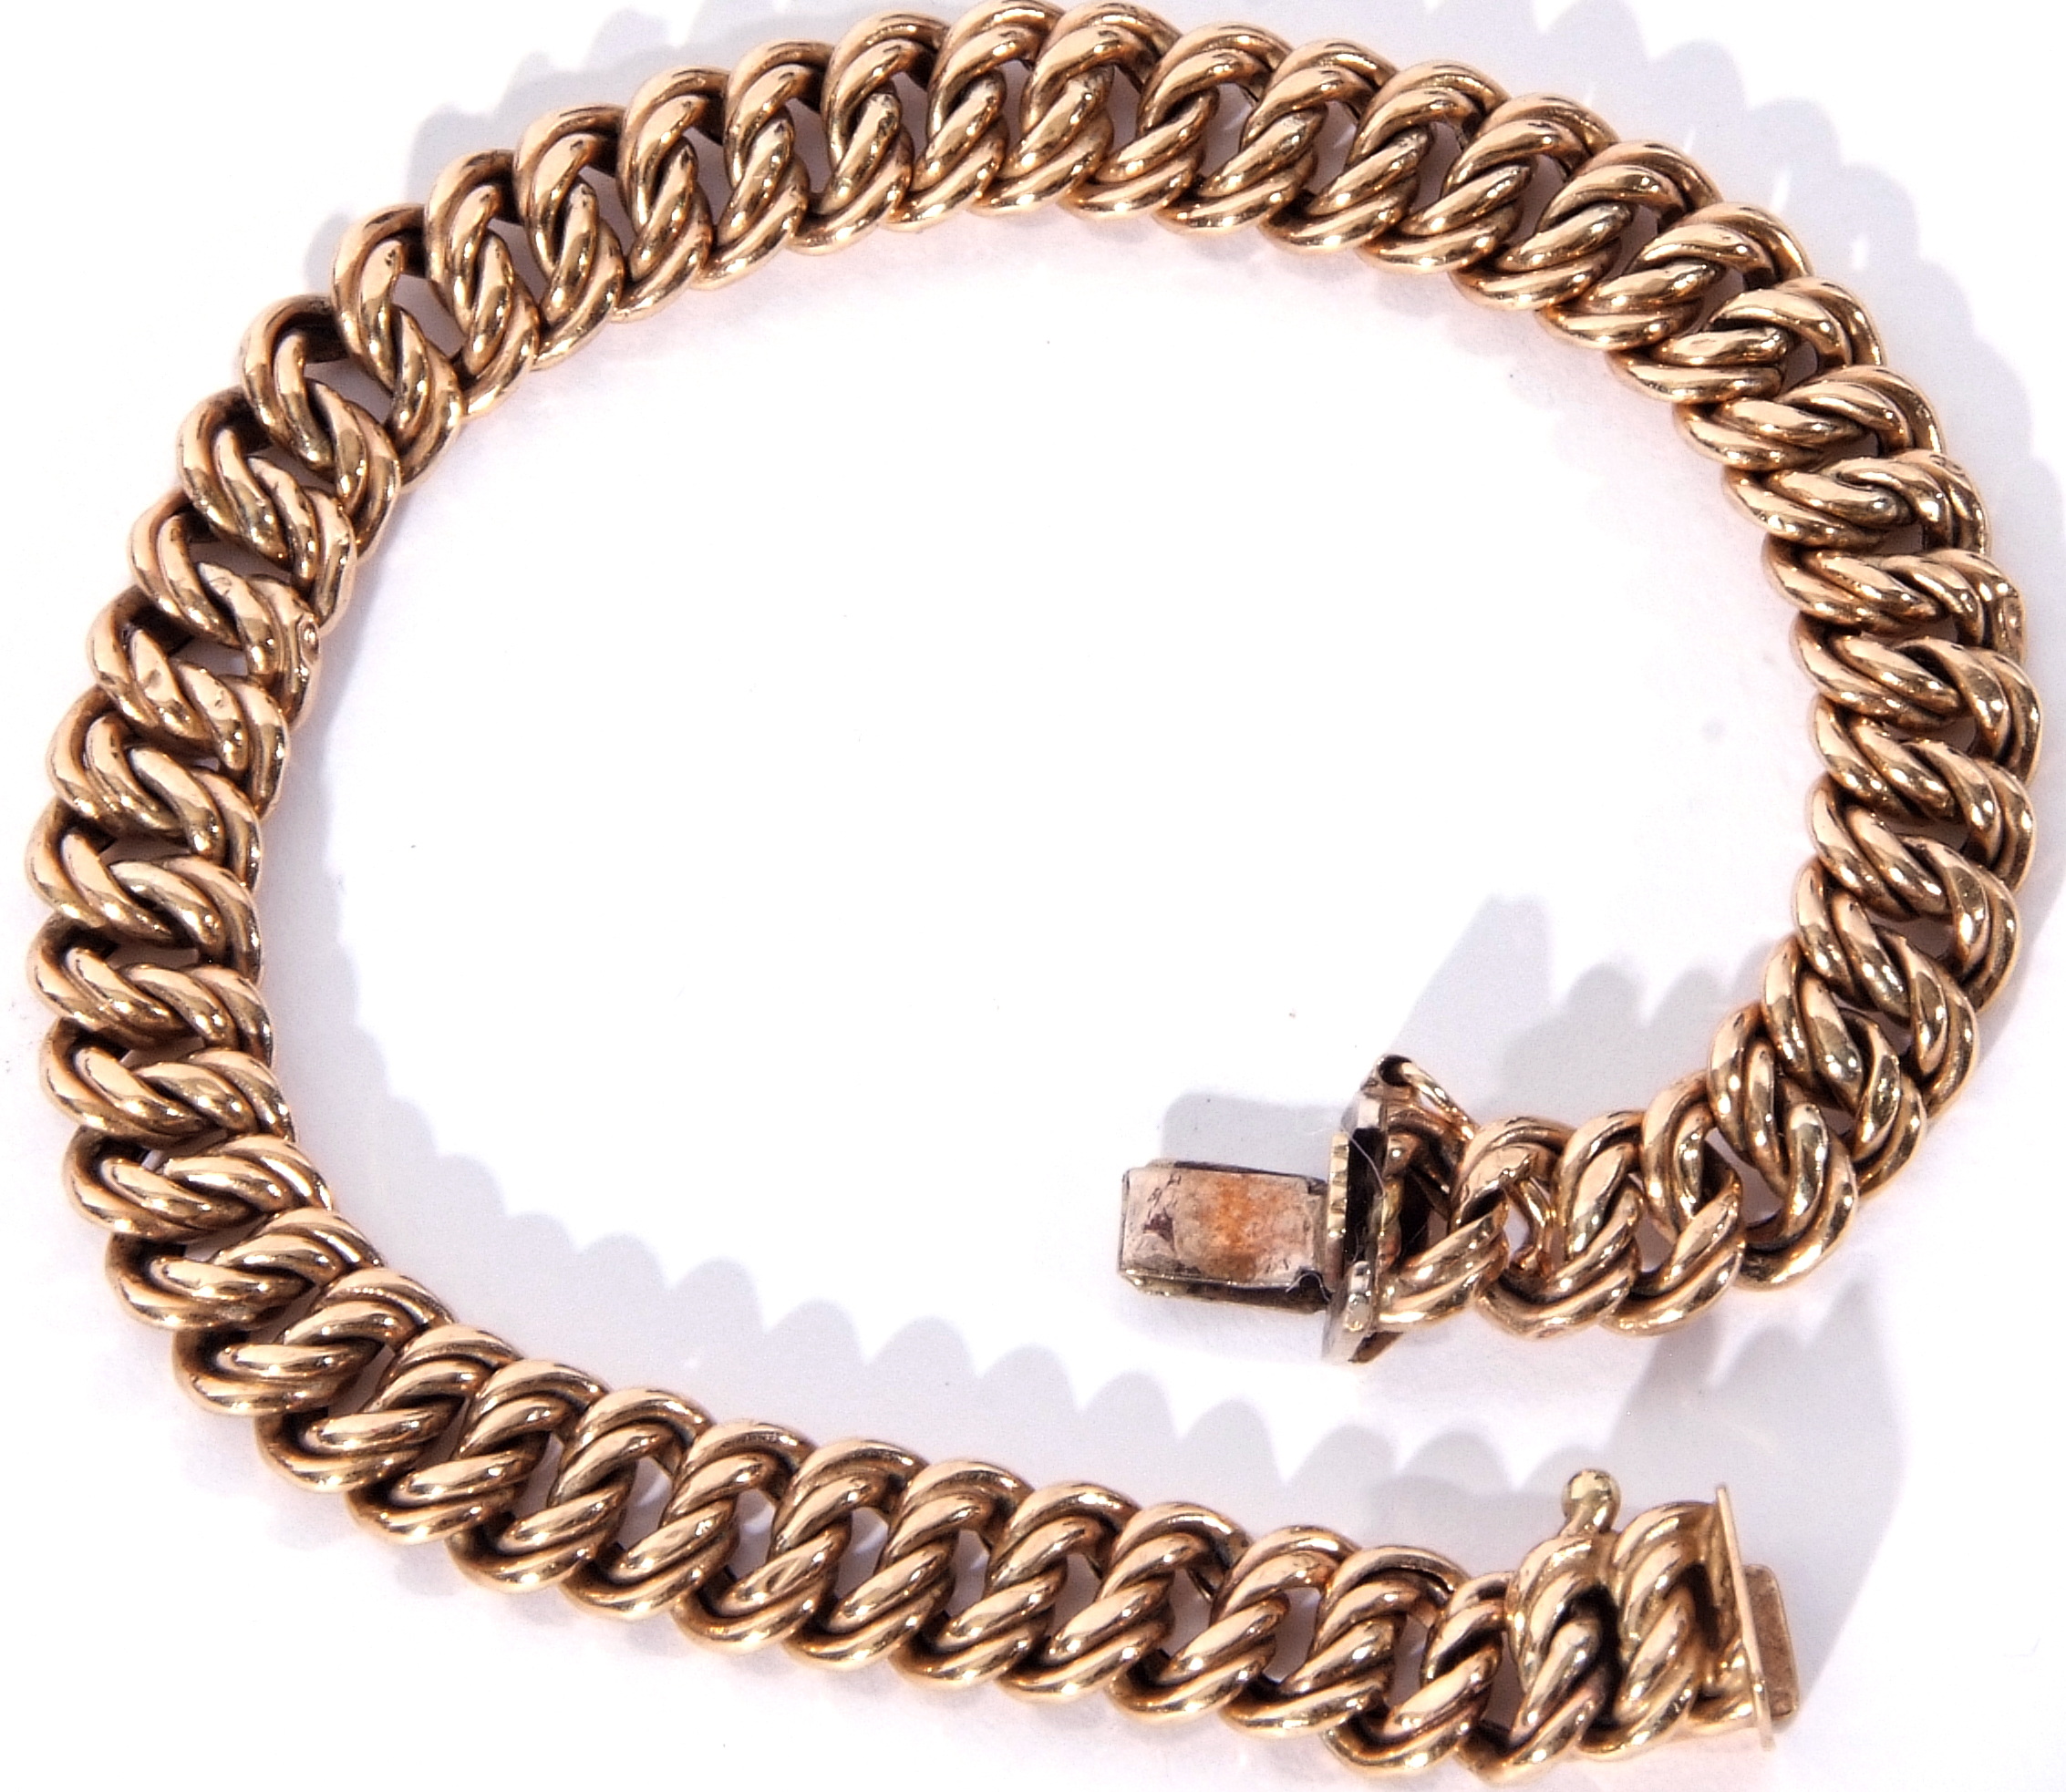 9ct gold bracelet, a rope twist design, 20cm long, 12.2gms - Image 2 of 3